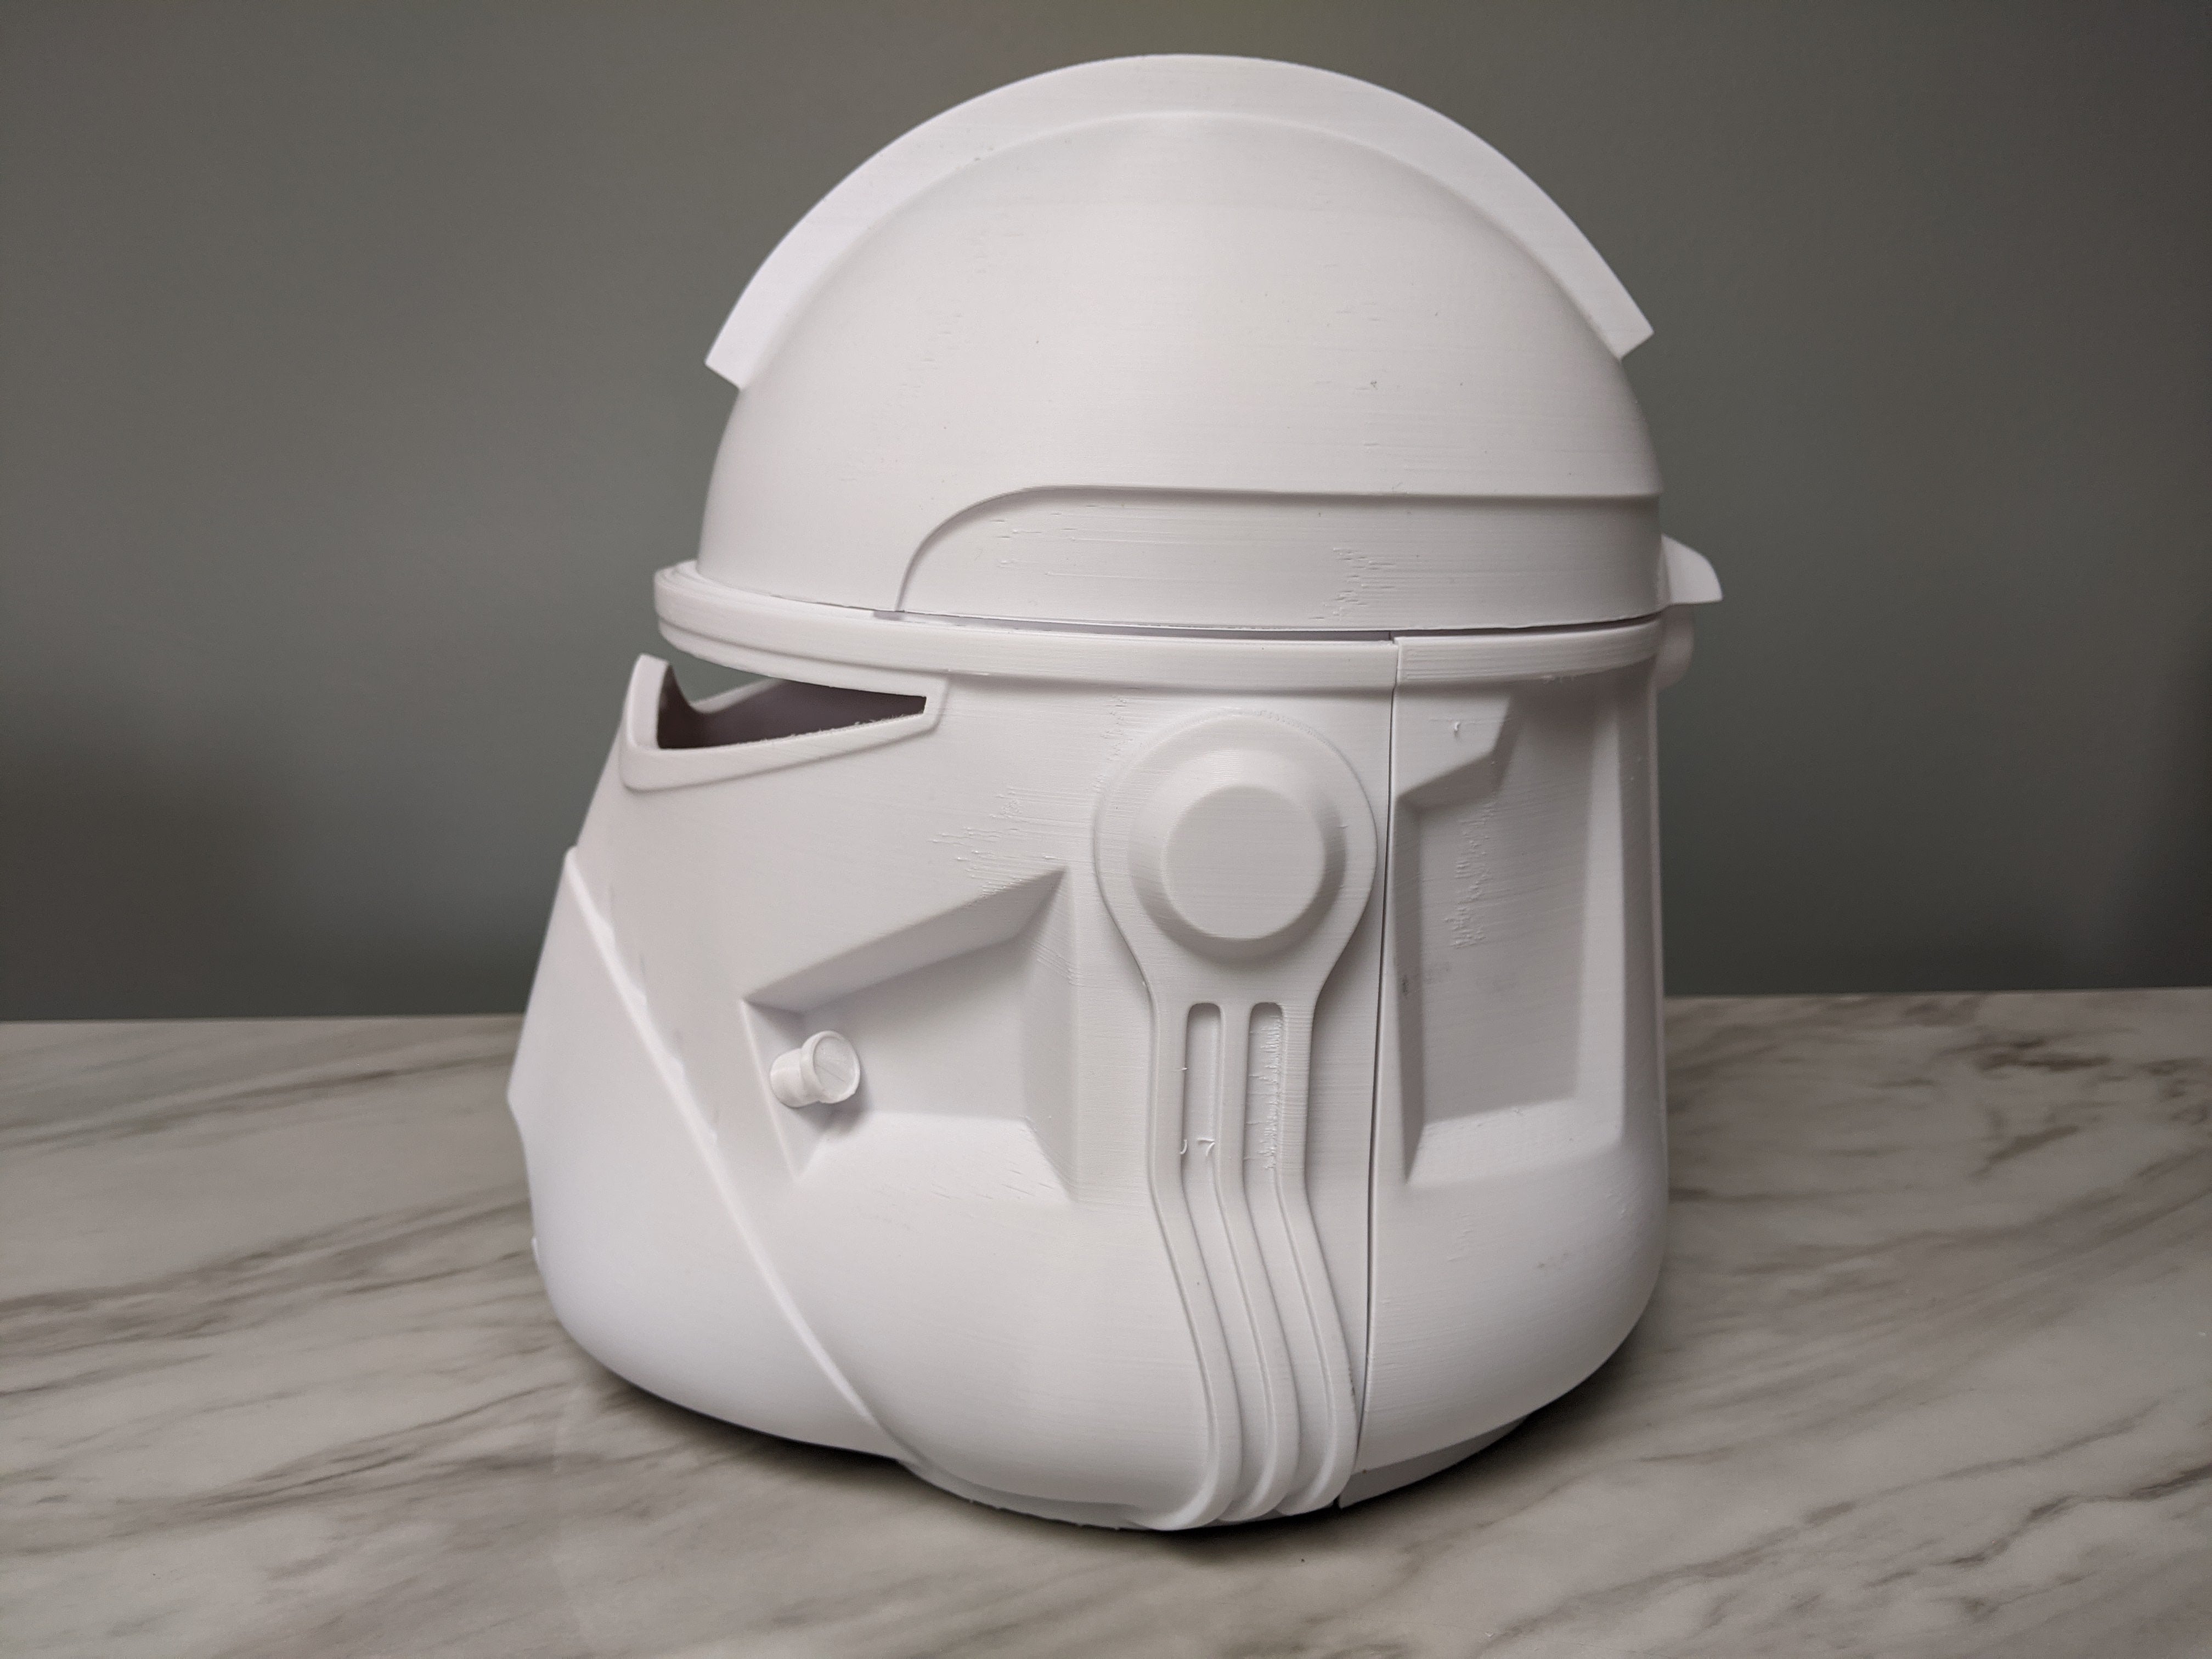 Commander Neyo Clone Trooper Helmet - DIY - Galactic Armory